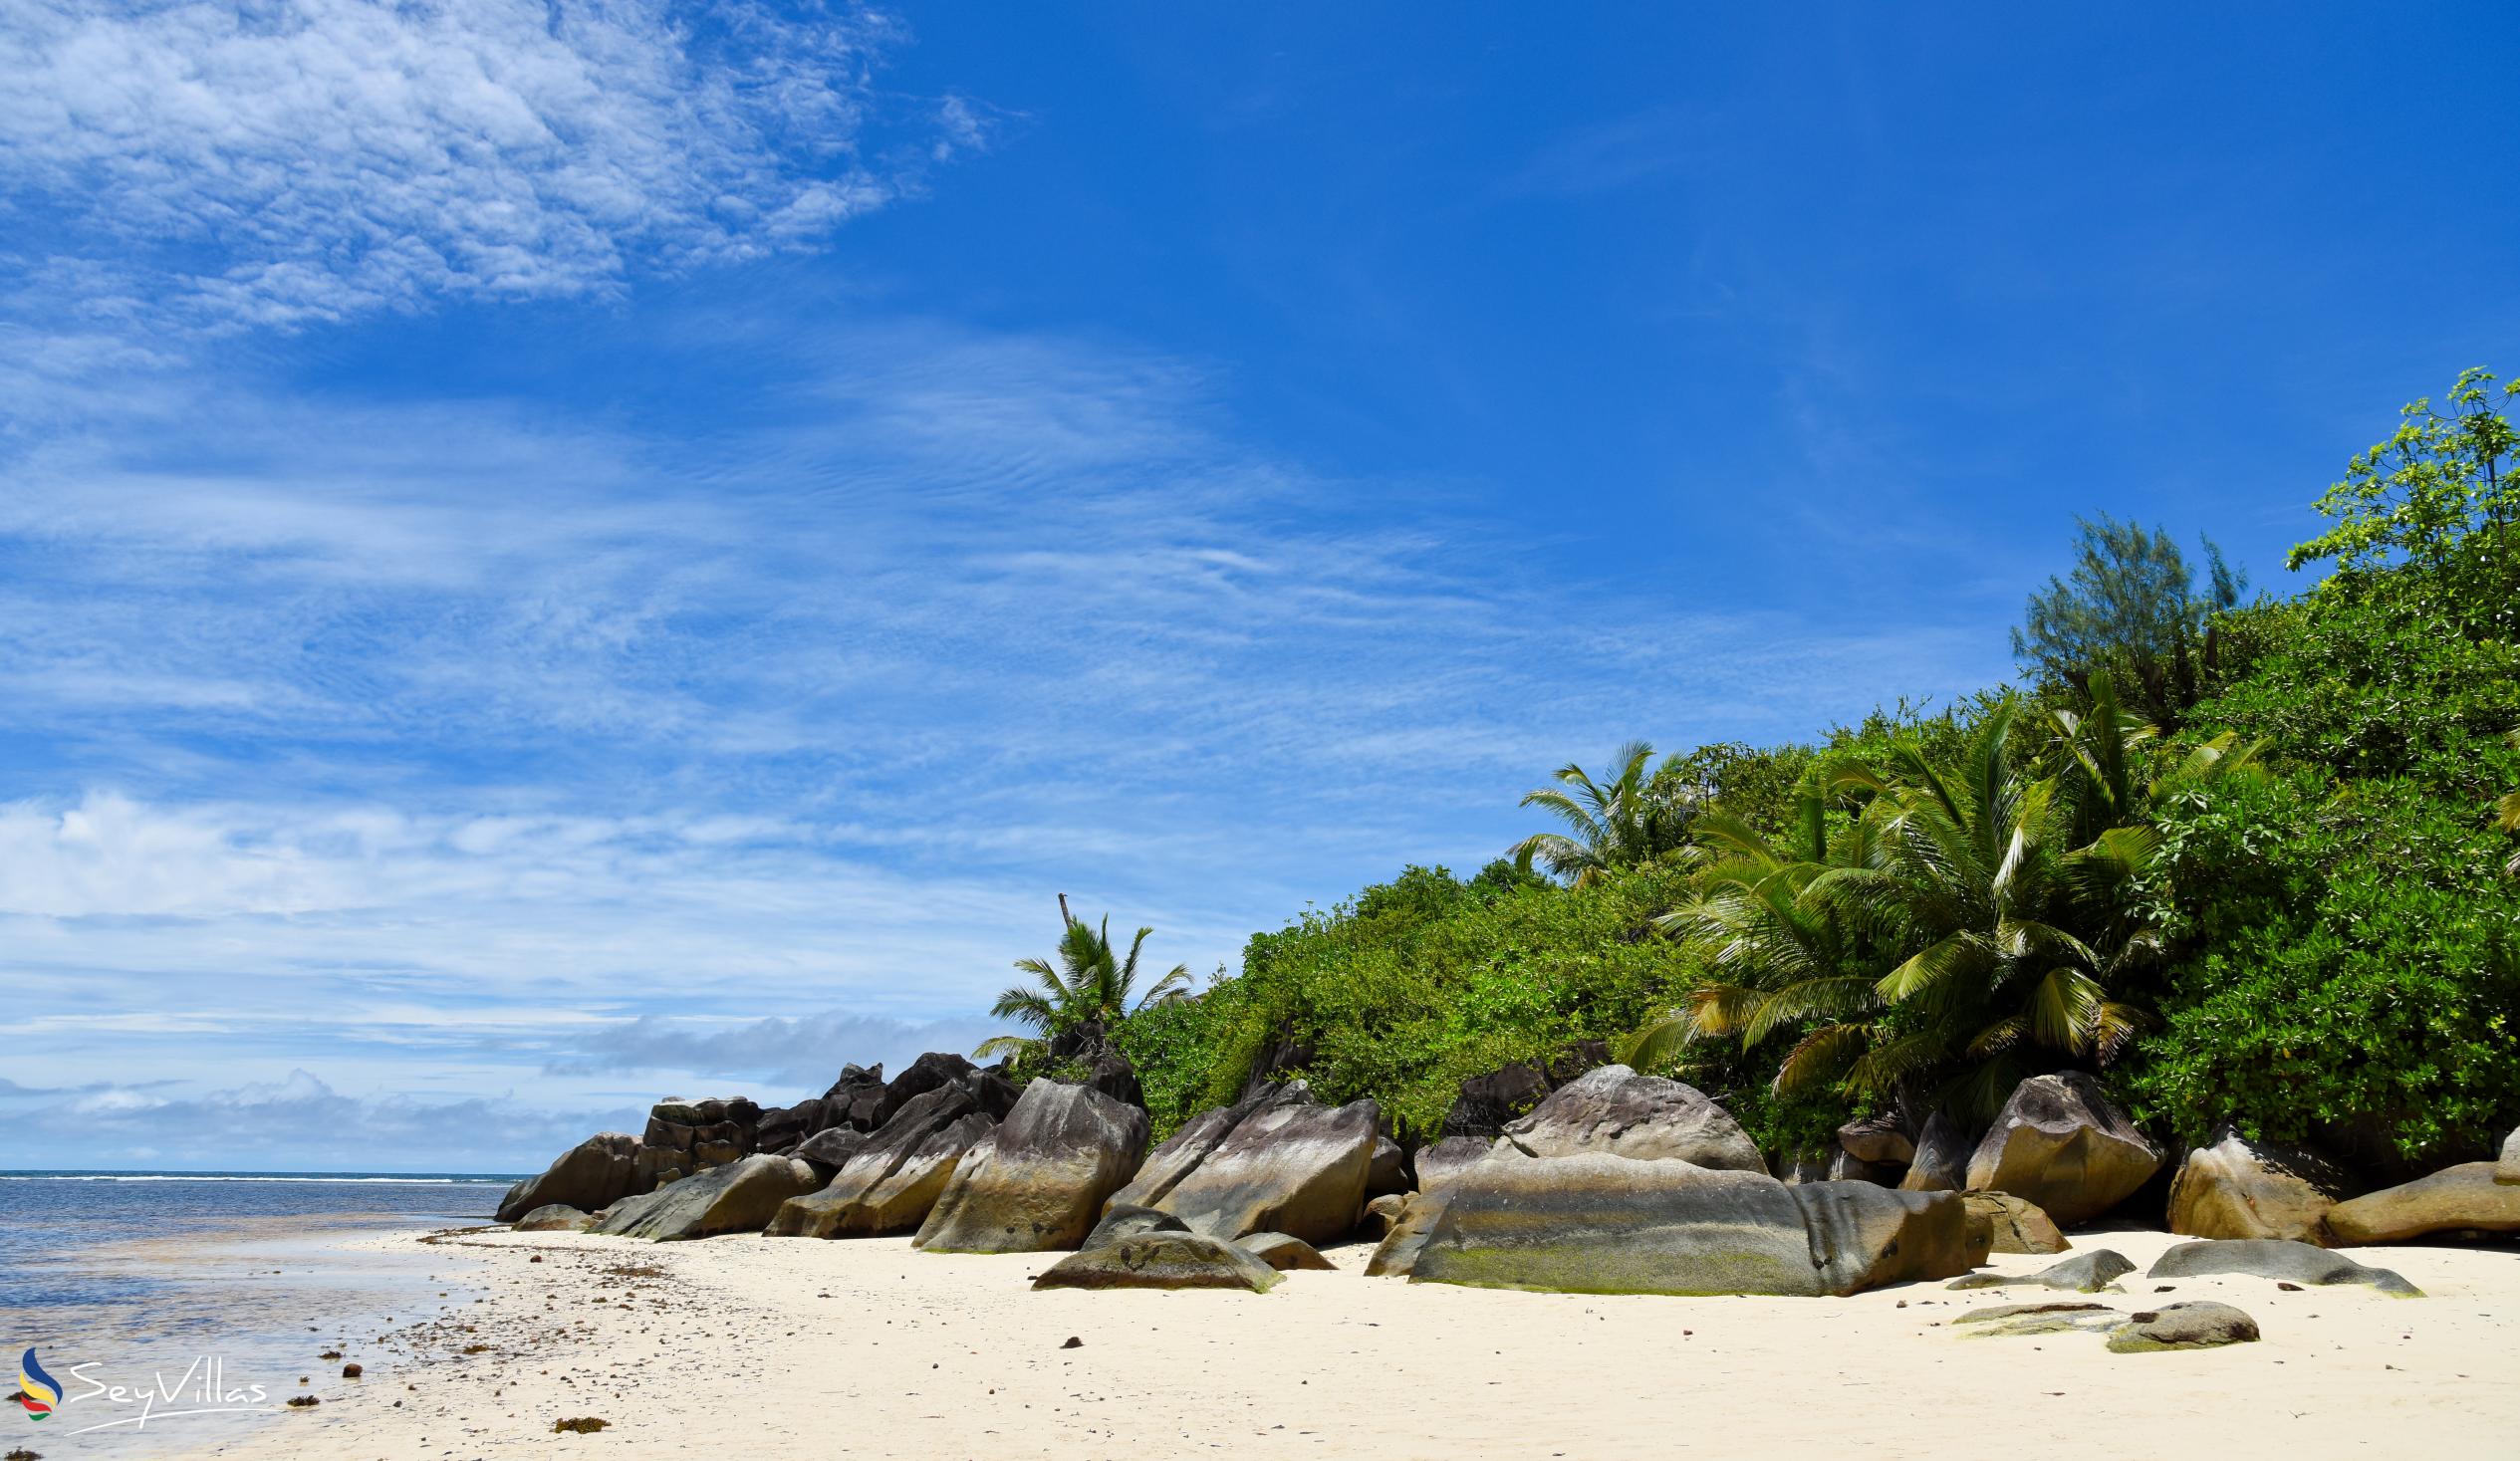 Photo 20: Port Launay South Beach - Mahé (Seychelles)